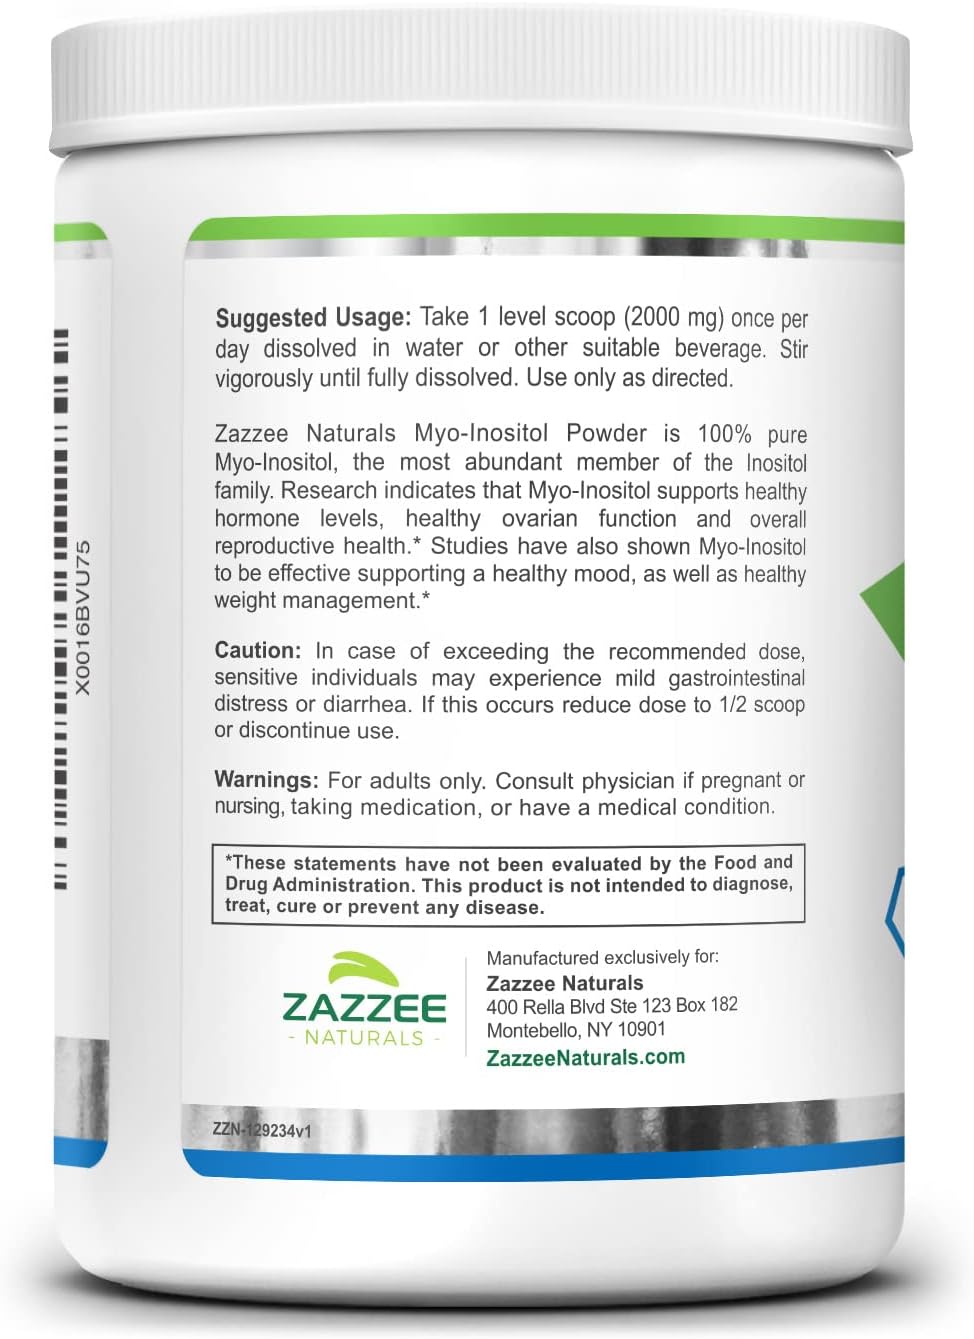 Zazzee Myo-Inositol Powder and USDA Organic Vitex Capsules, Vegan, All-Natural and Non-GMO